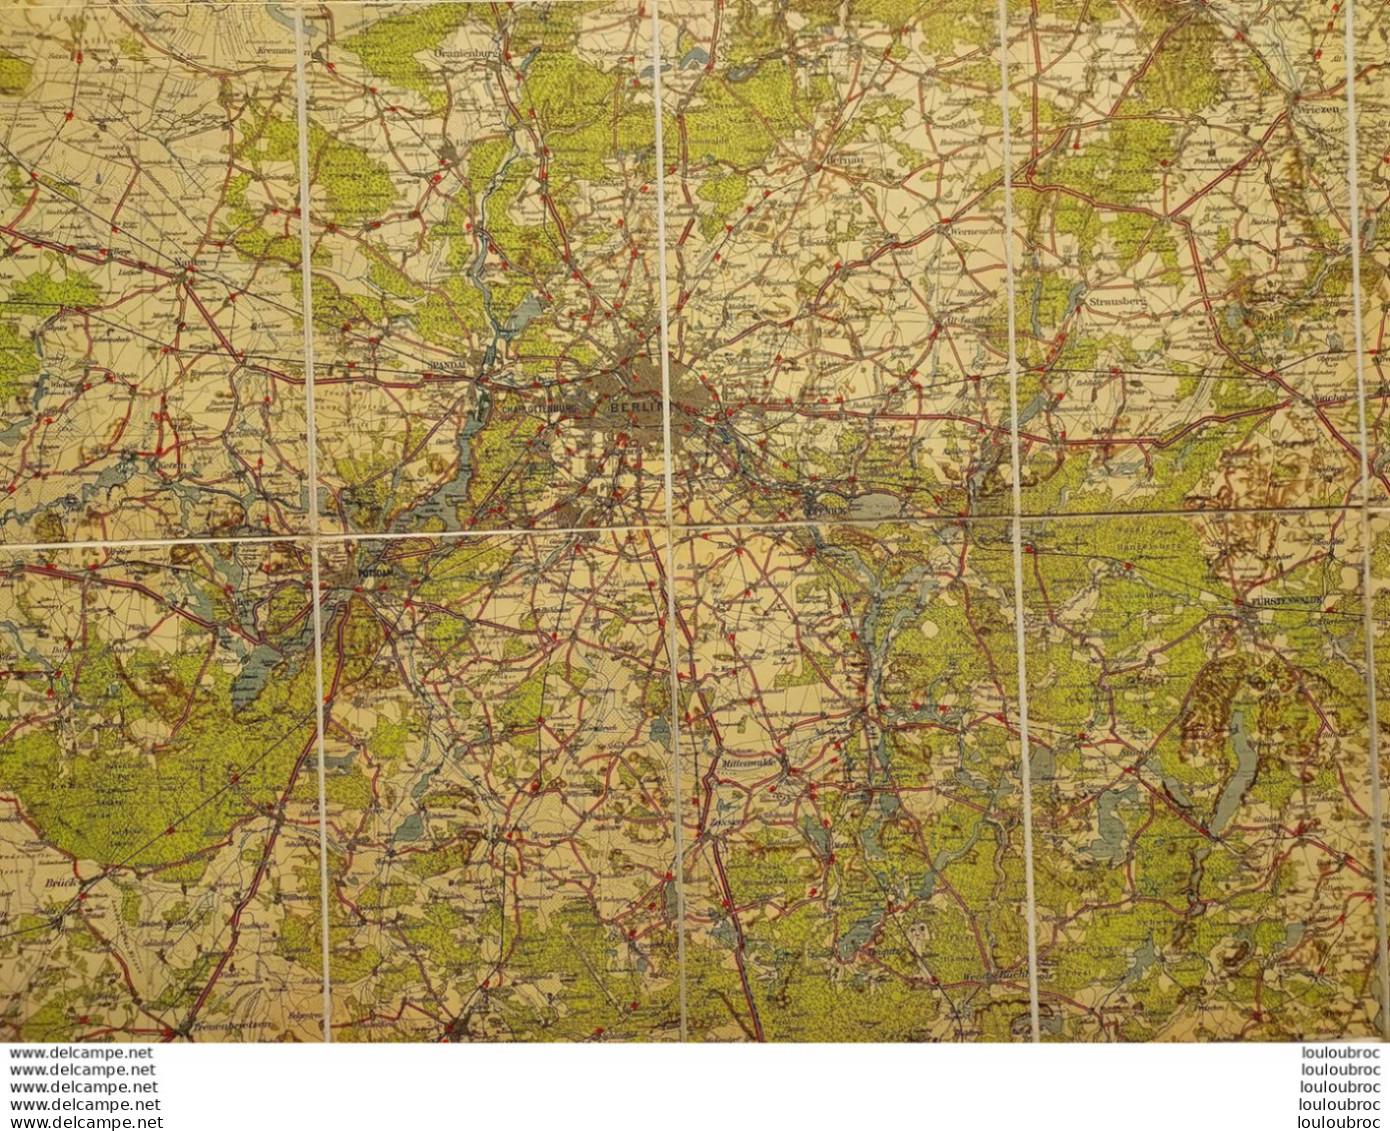 CARTE TOILEE BRANDENBURG PHARUSKARTE FORMAT 109 X 80 CM - Cartes Géographiques